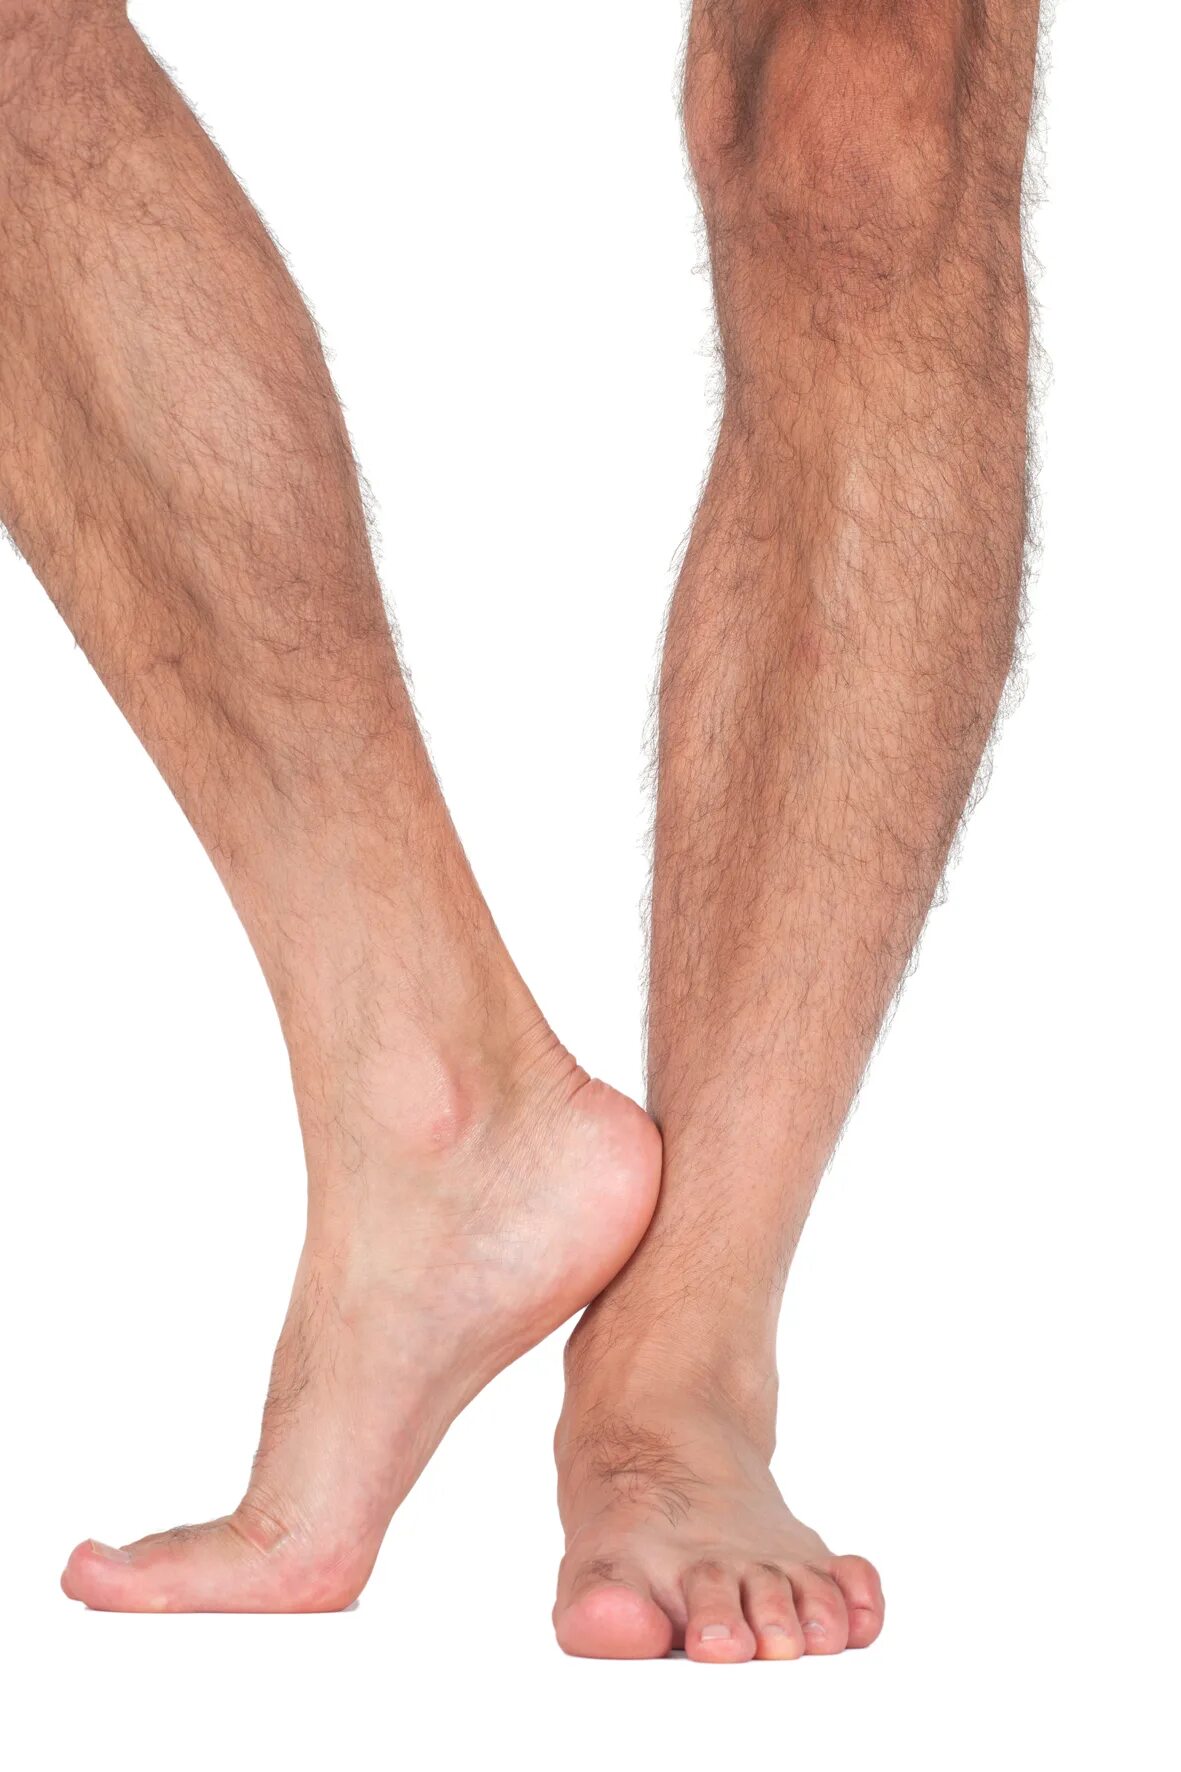 Мужские ноги. Мужская нога спереди. Мужские ноги на белом фоне.